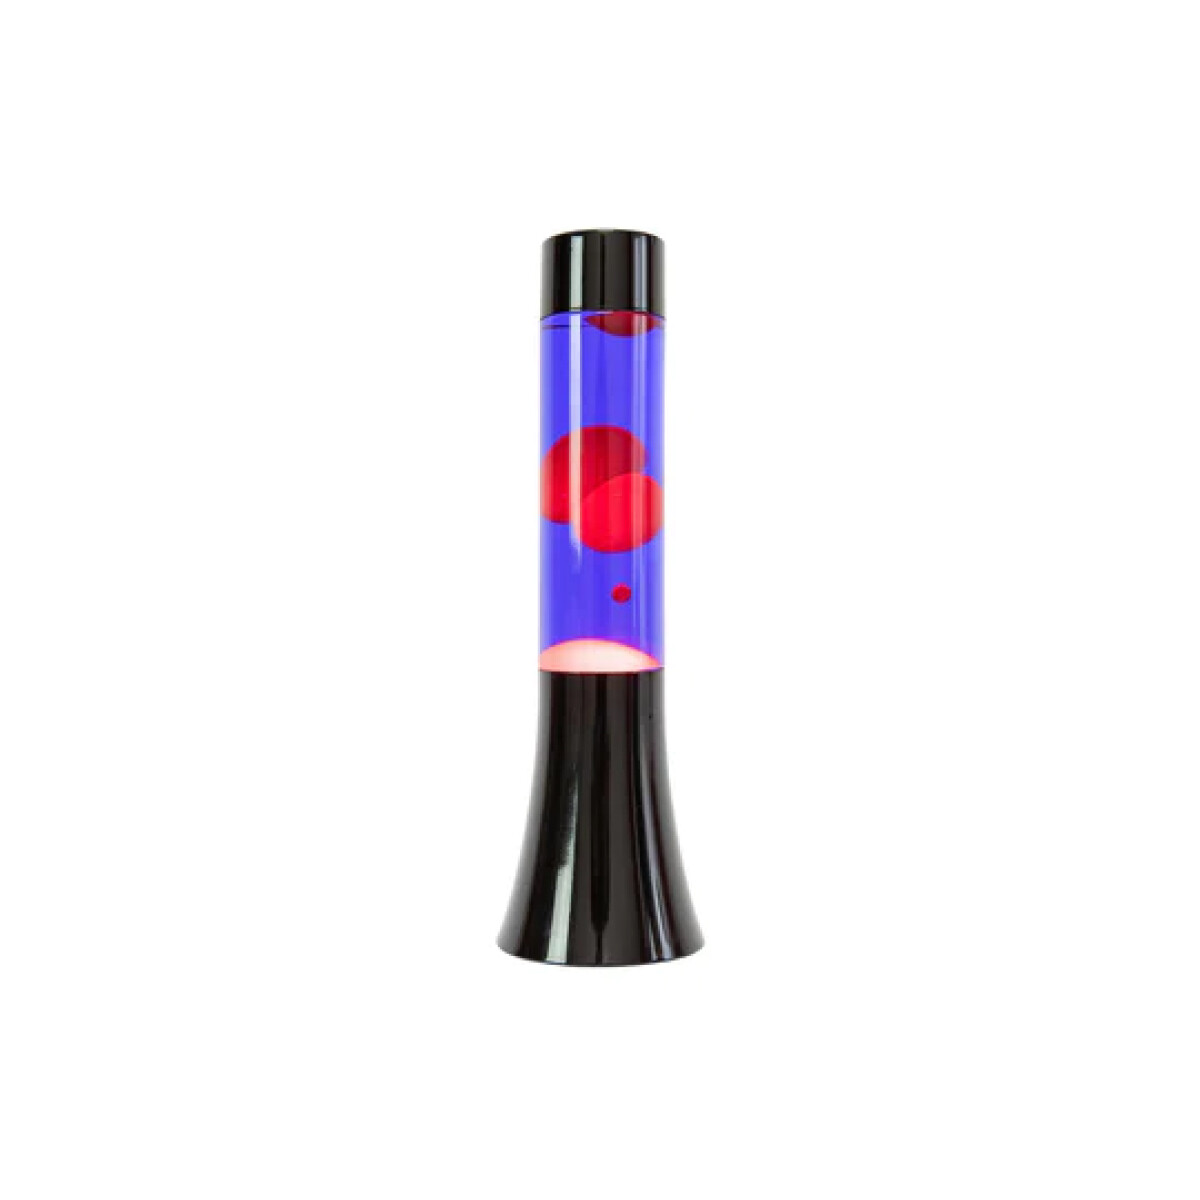 Lámpara De Lava Negra, Roja Y Azul De 30 Cm 